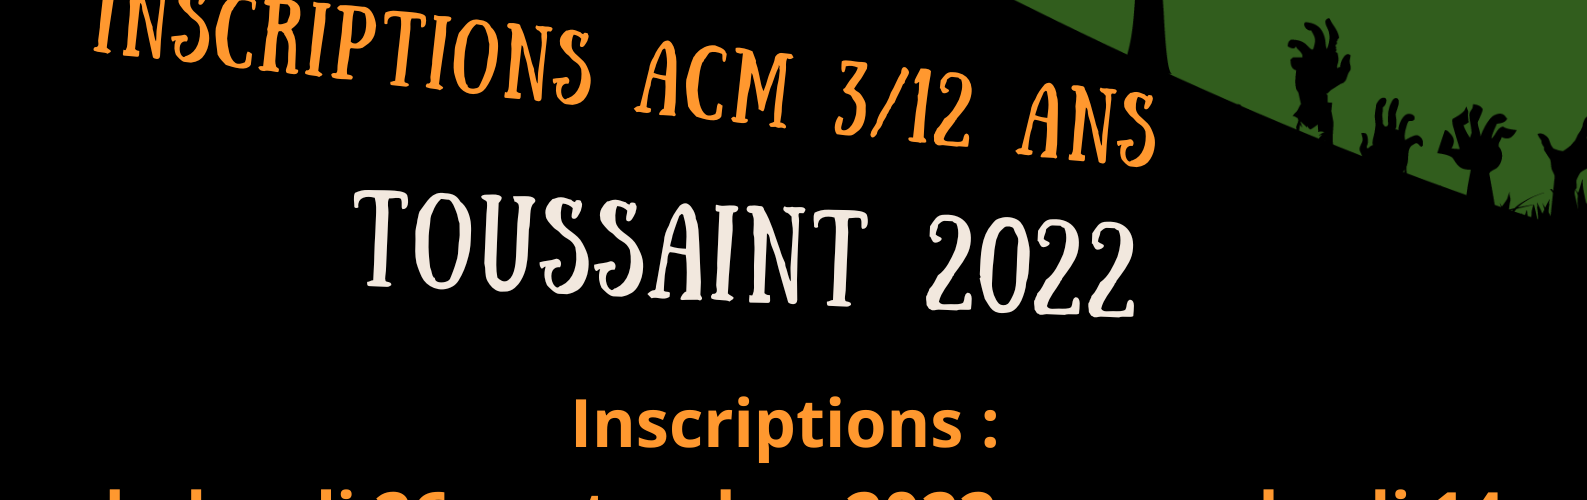 INSCRIPTIONS ACM 3-12 ANS